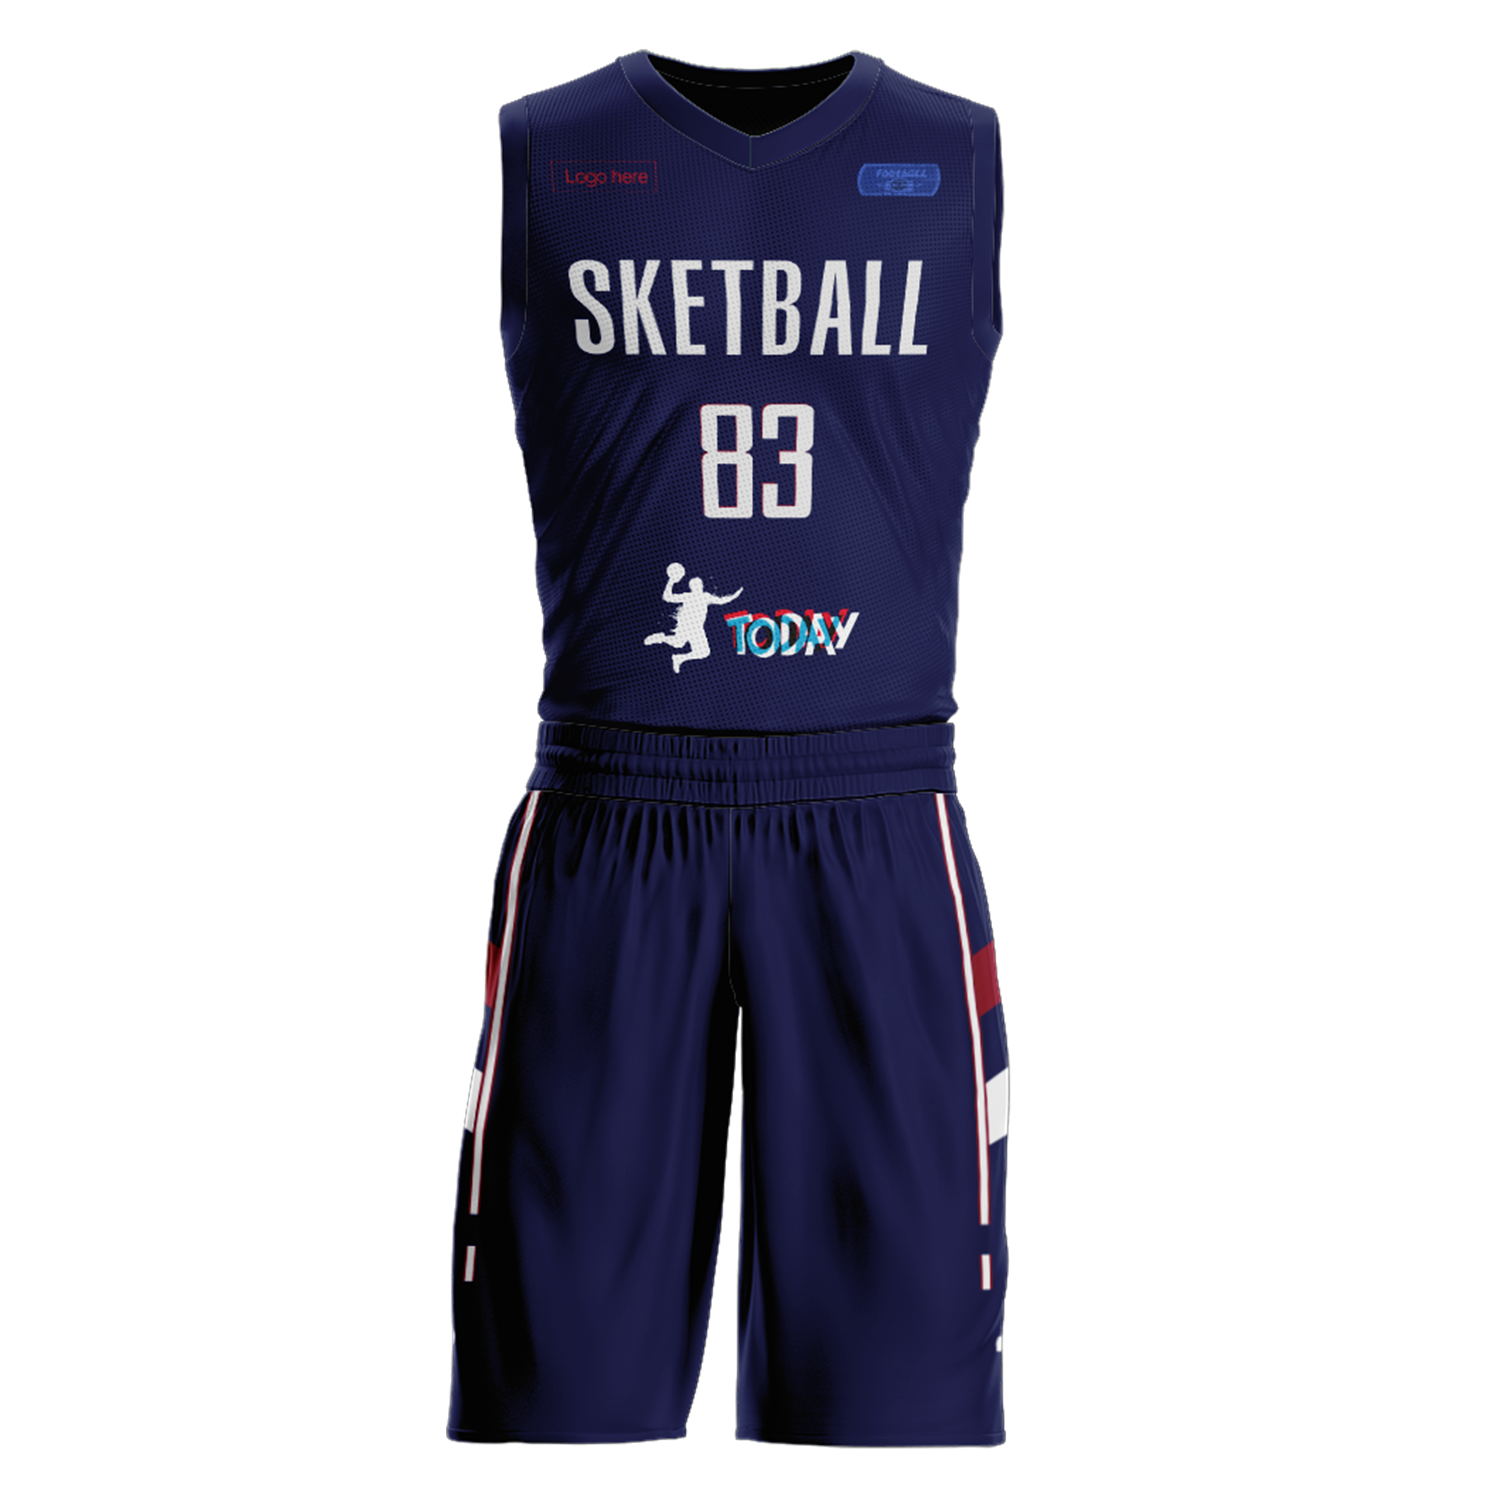 Trajes de baloncesto del equipo de Serbia personalizados